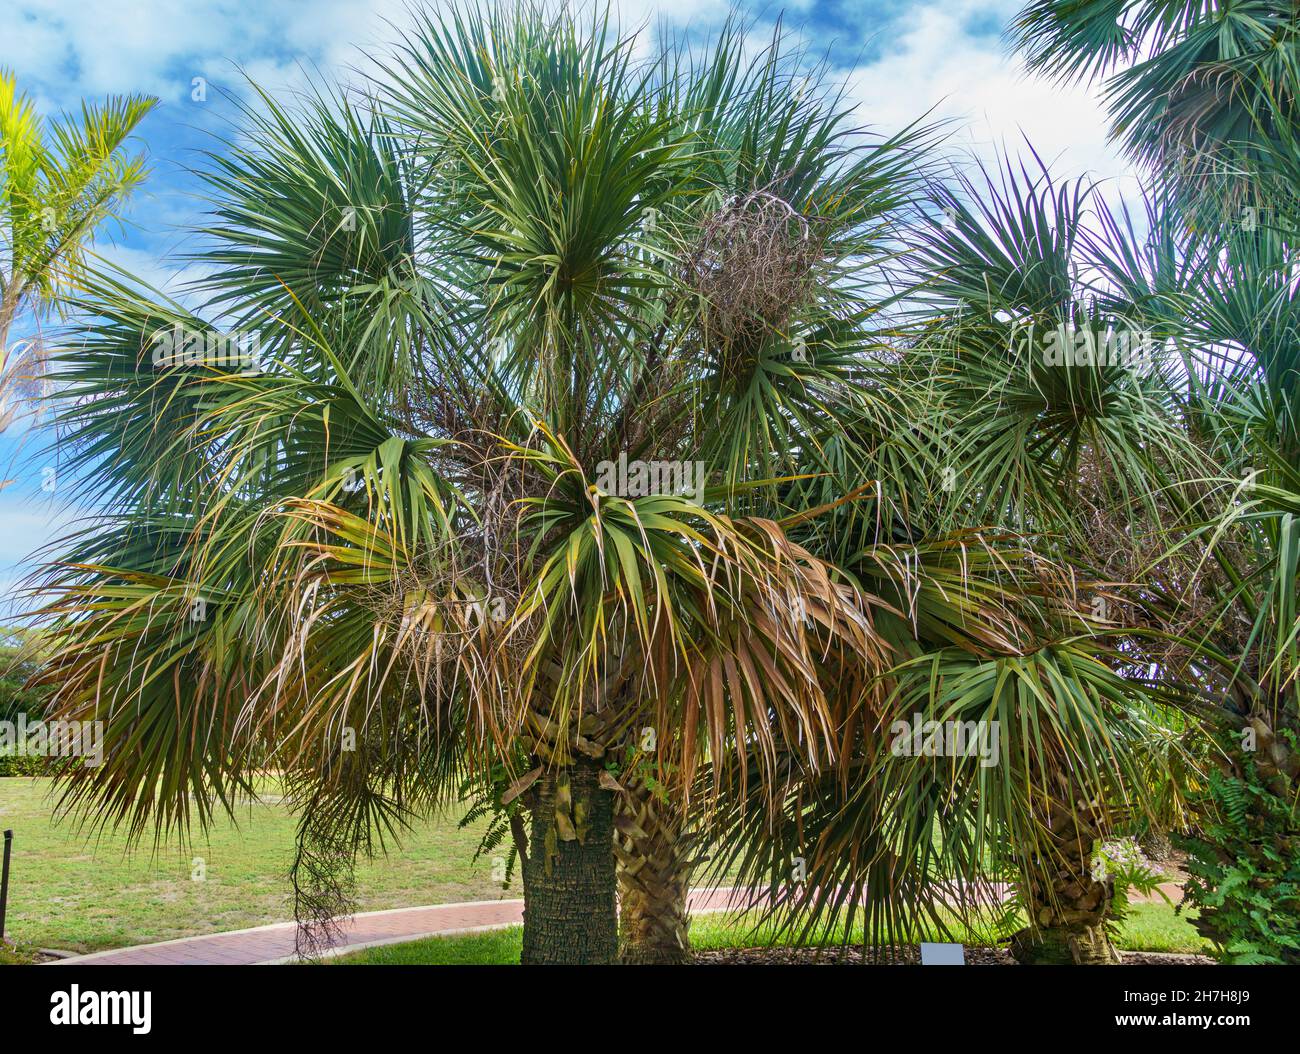 Bermuda palmetto a.k.a. bibby-tree (Sabal bermudana) - Florida, USA Stock Photo